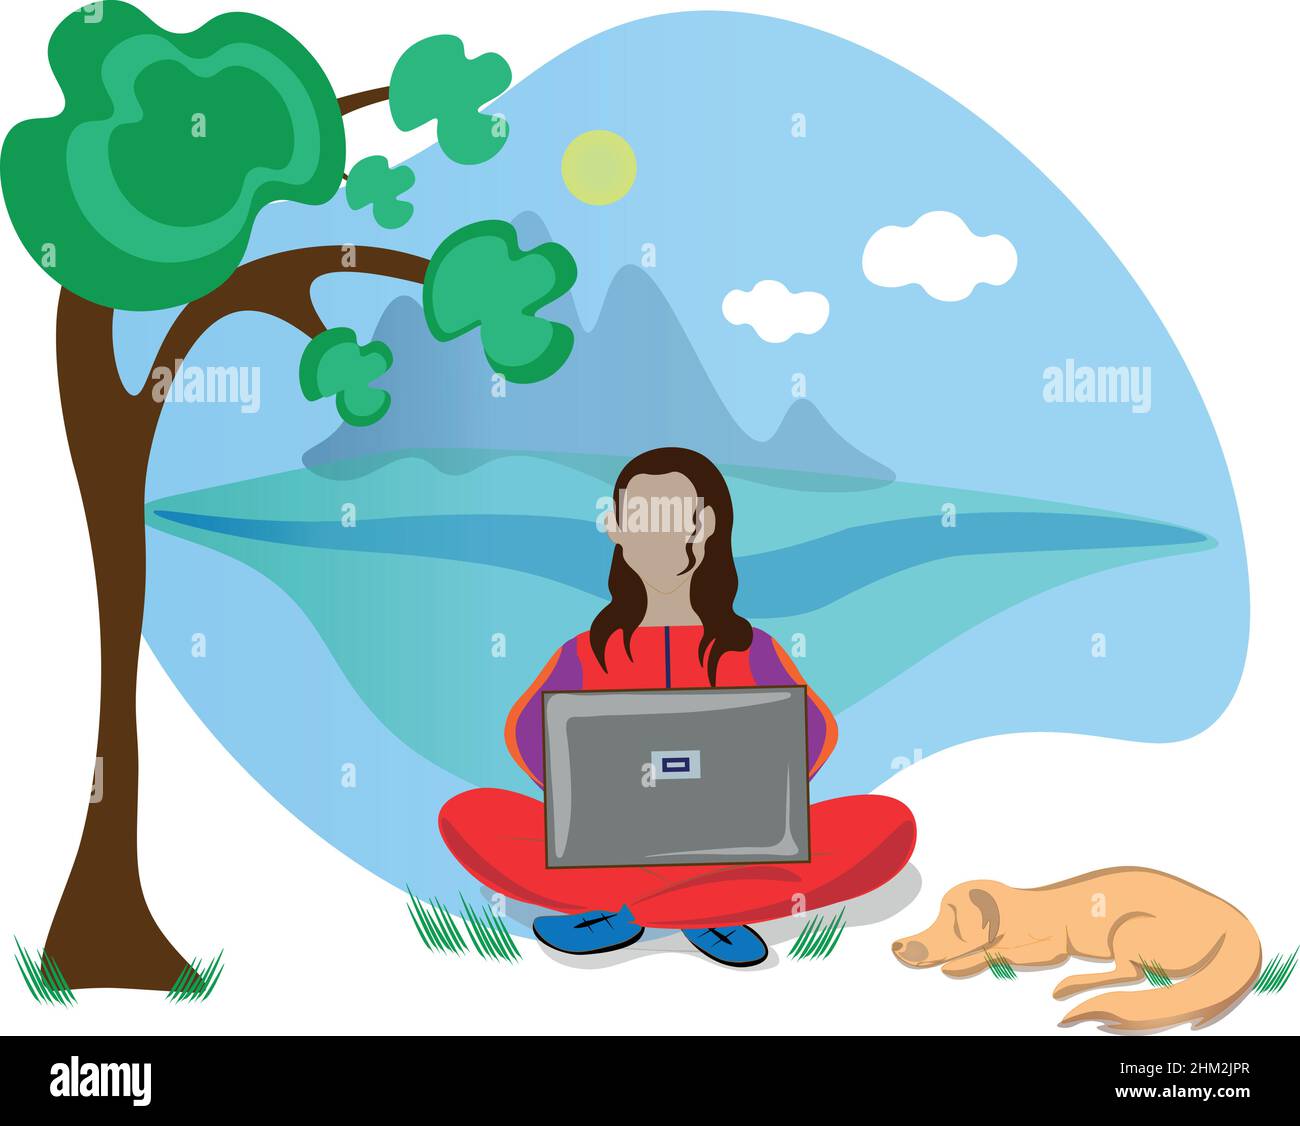 Schöne Illustration einer Dame in einem Trainingsanzug sitzt in der Natur arbeiten auf einem Laptop, ihr Hund schläft neben ihr. vector Stock Vektor